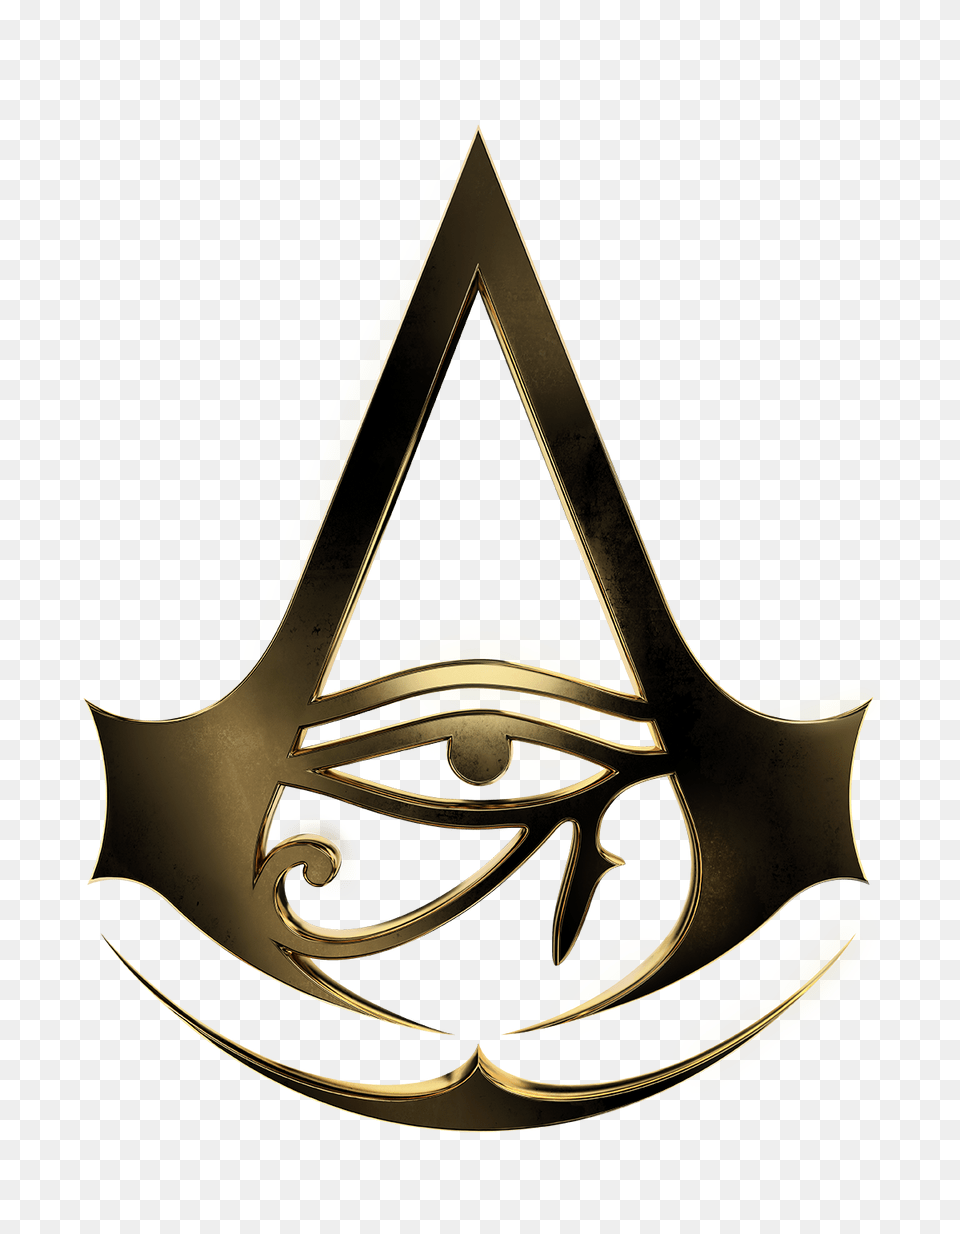 Make Assassins Creed Logo Grendizer, Symbol, Emblem Png Image